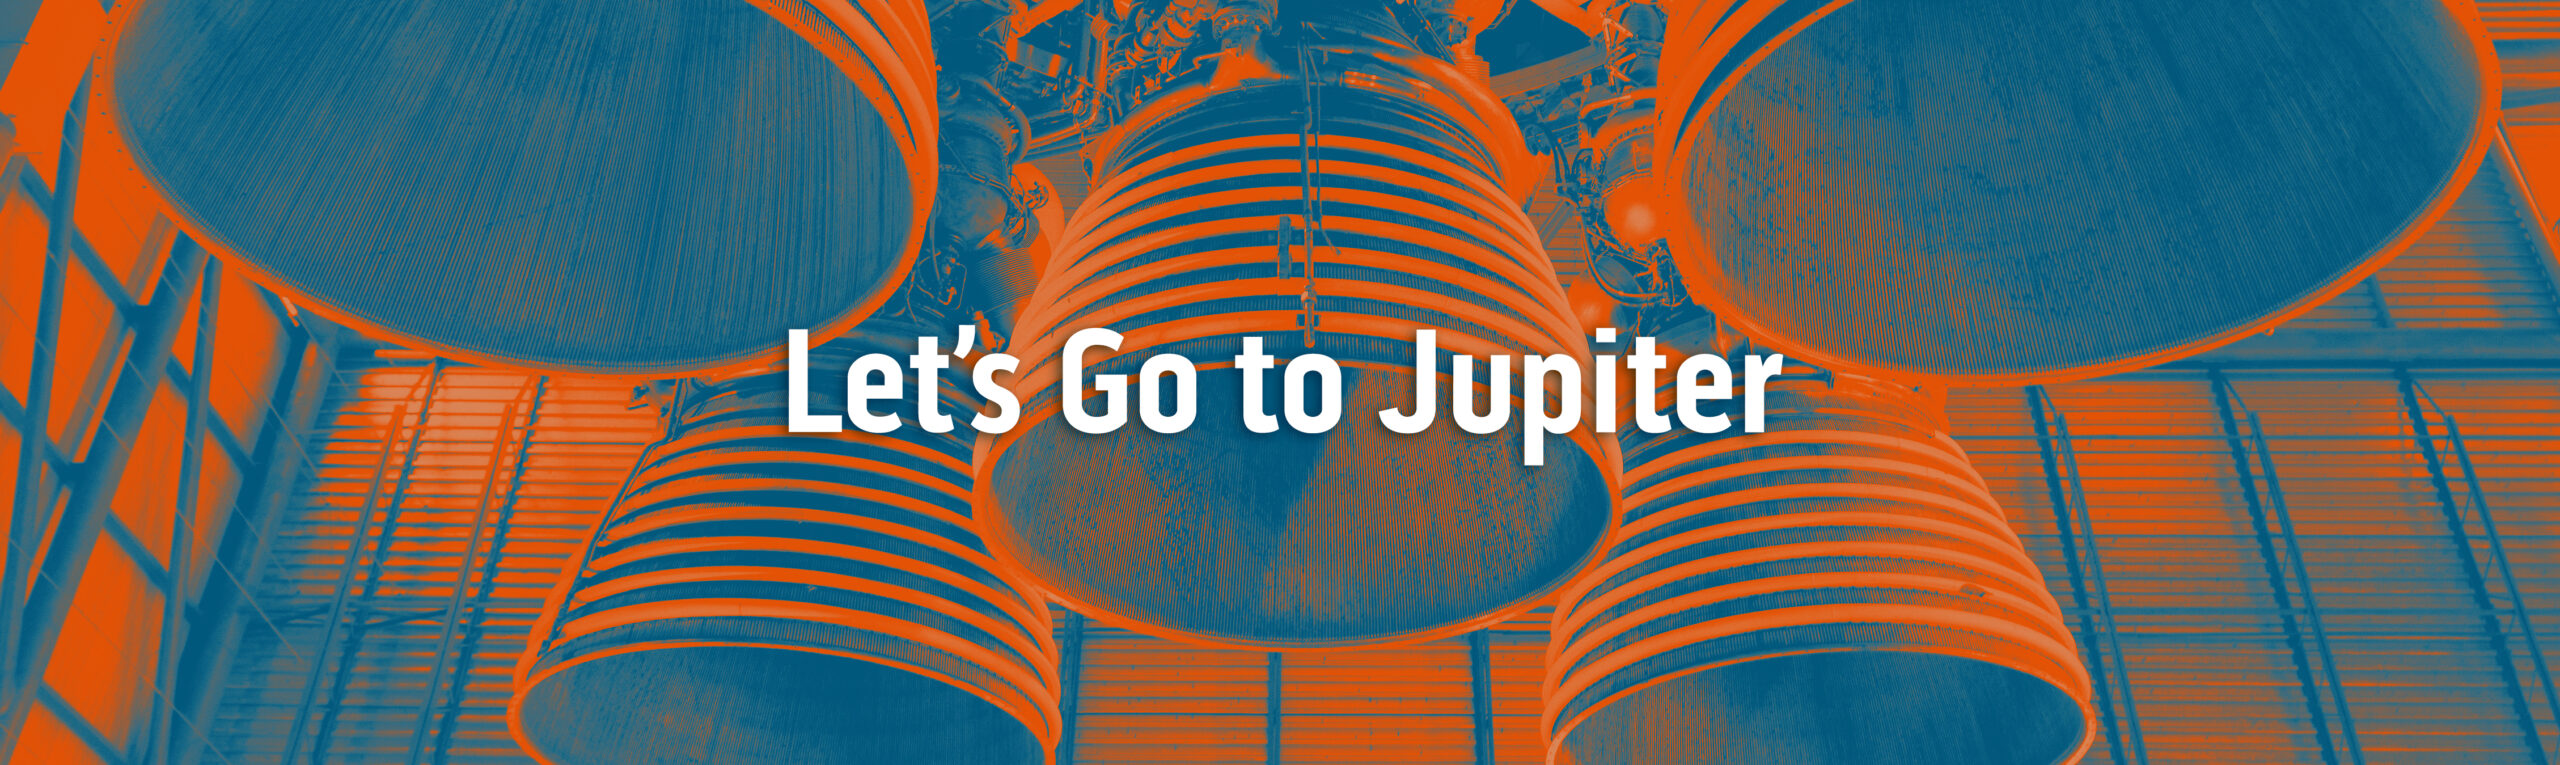 Let's Go to Jupiter